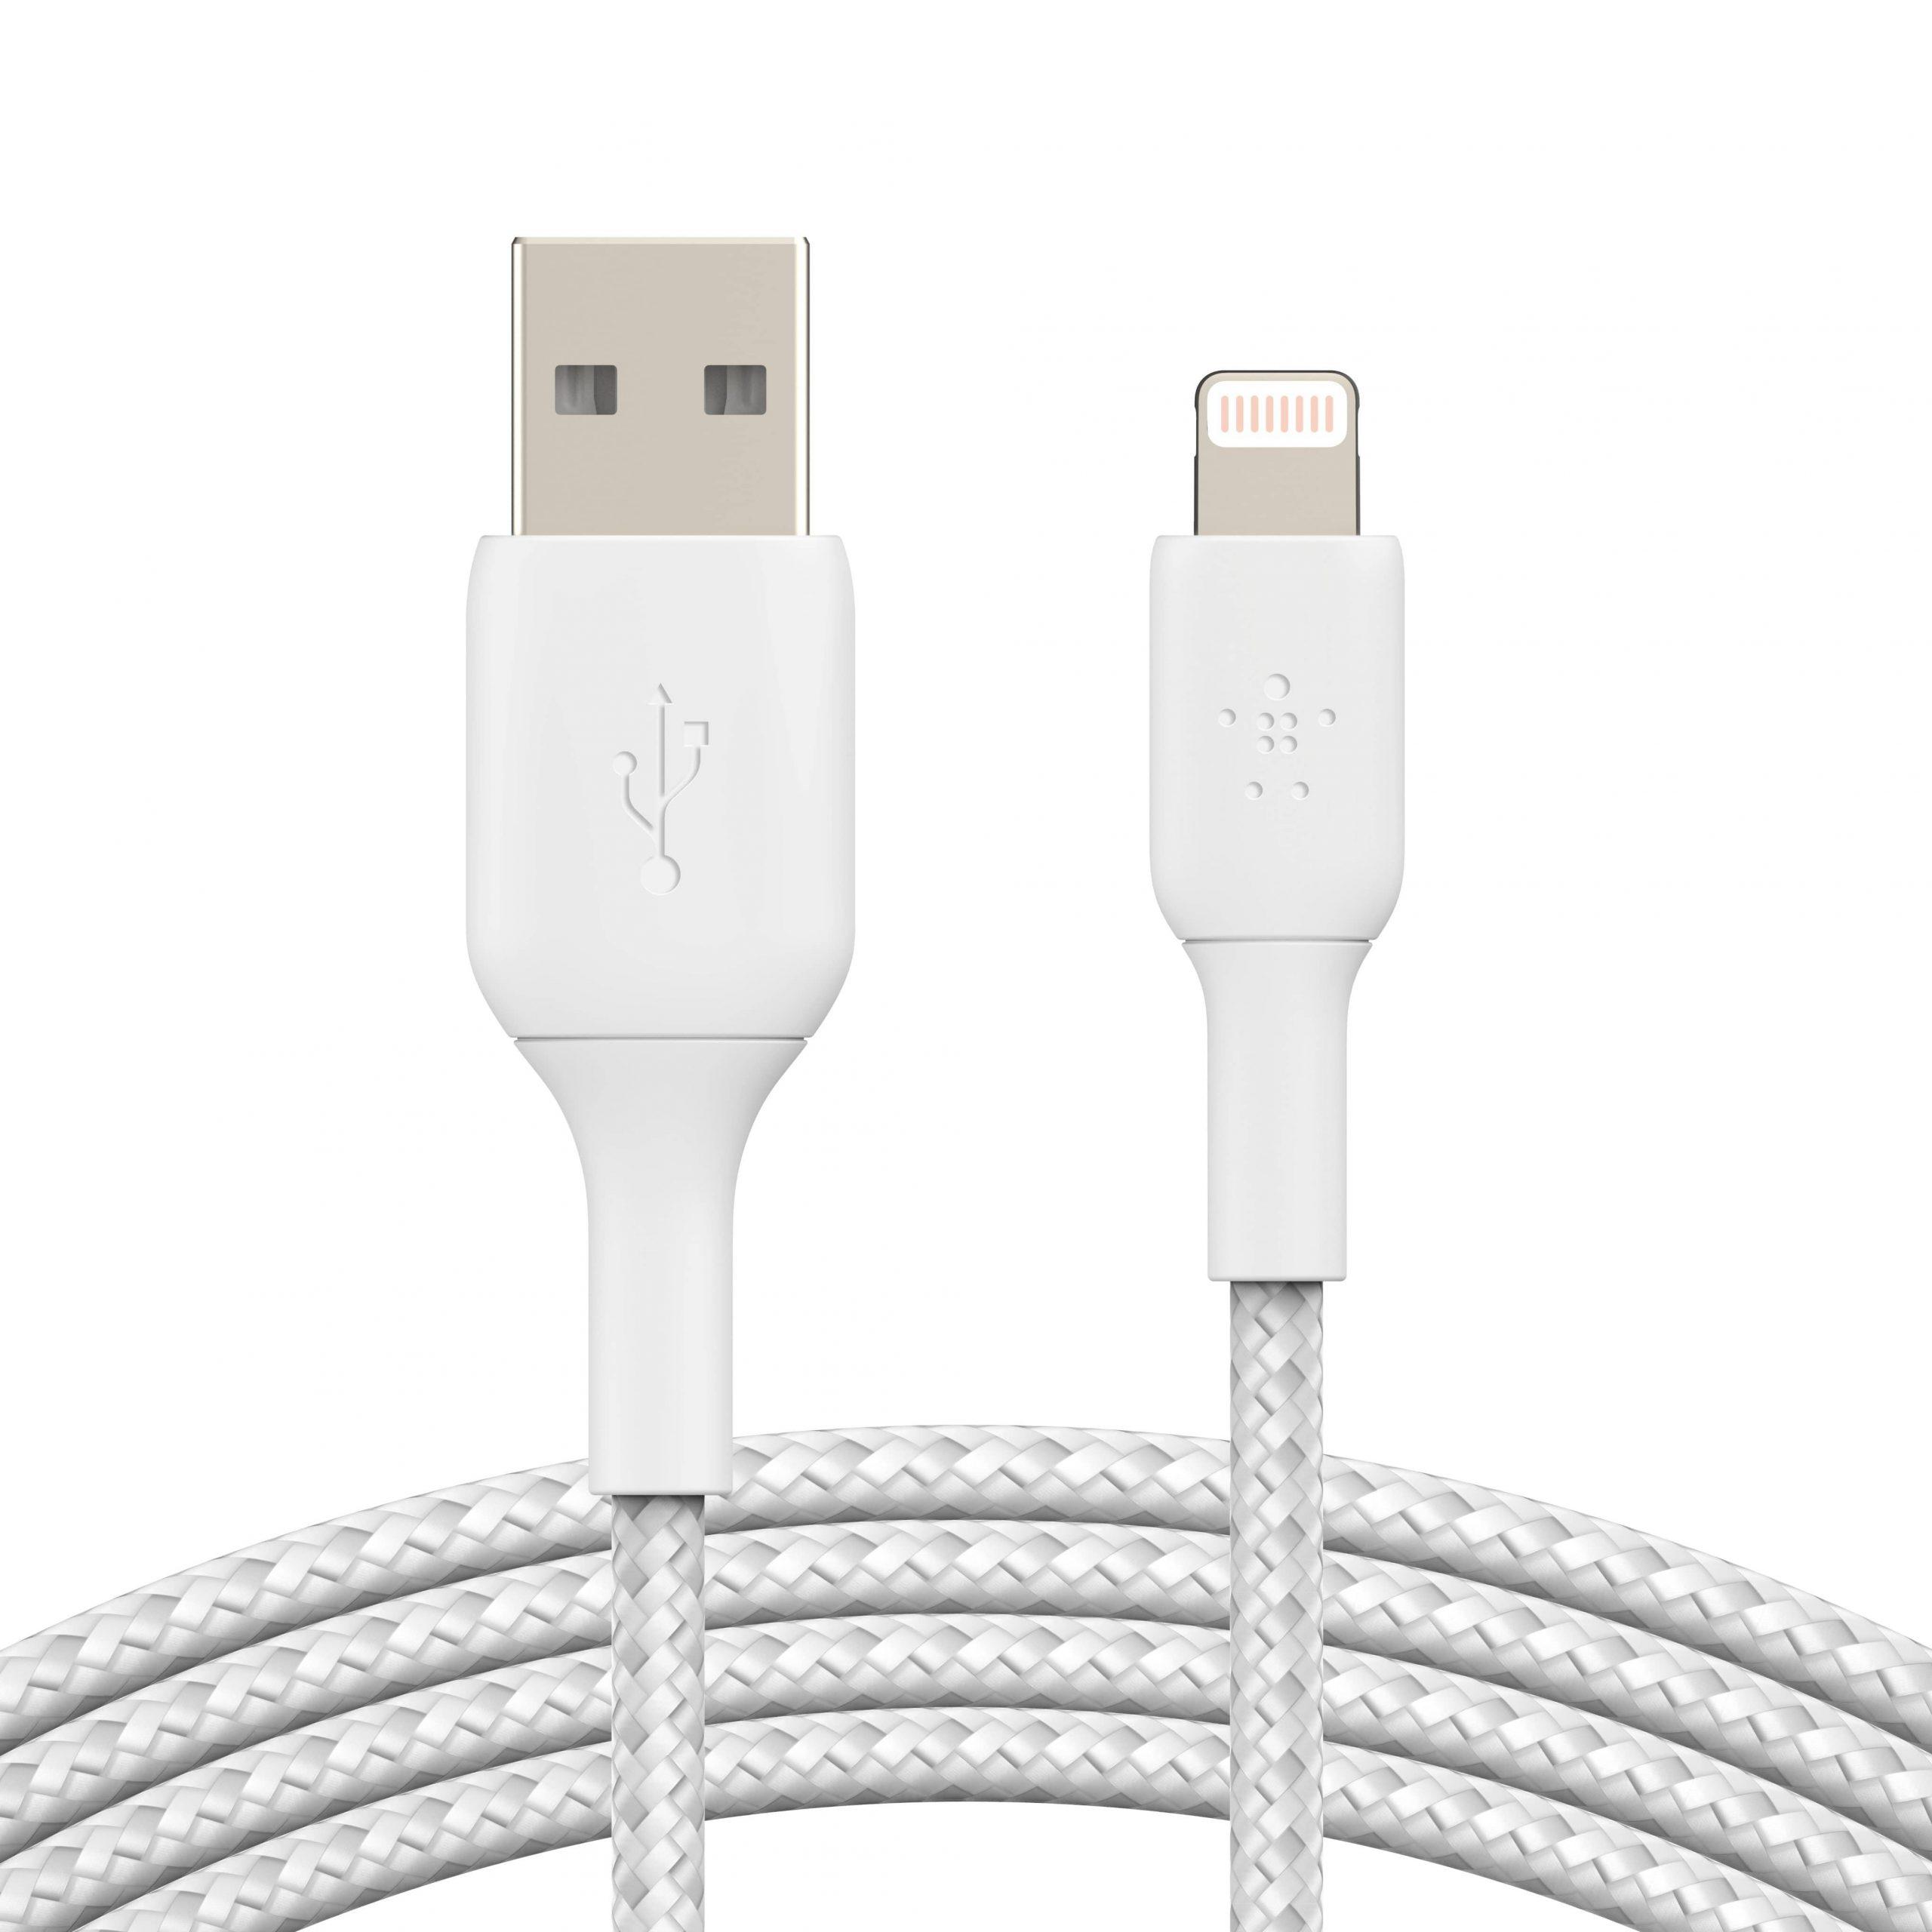 وصلة شاحن (كيبل شحن) بمدخل USB-A و منفذ Lightning للآيفون و الآيباد 3 متر أبيض Belkin - Boost Charge USB-A to Lightning Braided Cable - cG9zdDo1NTc1Nw==